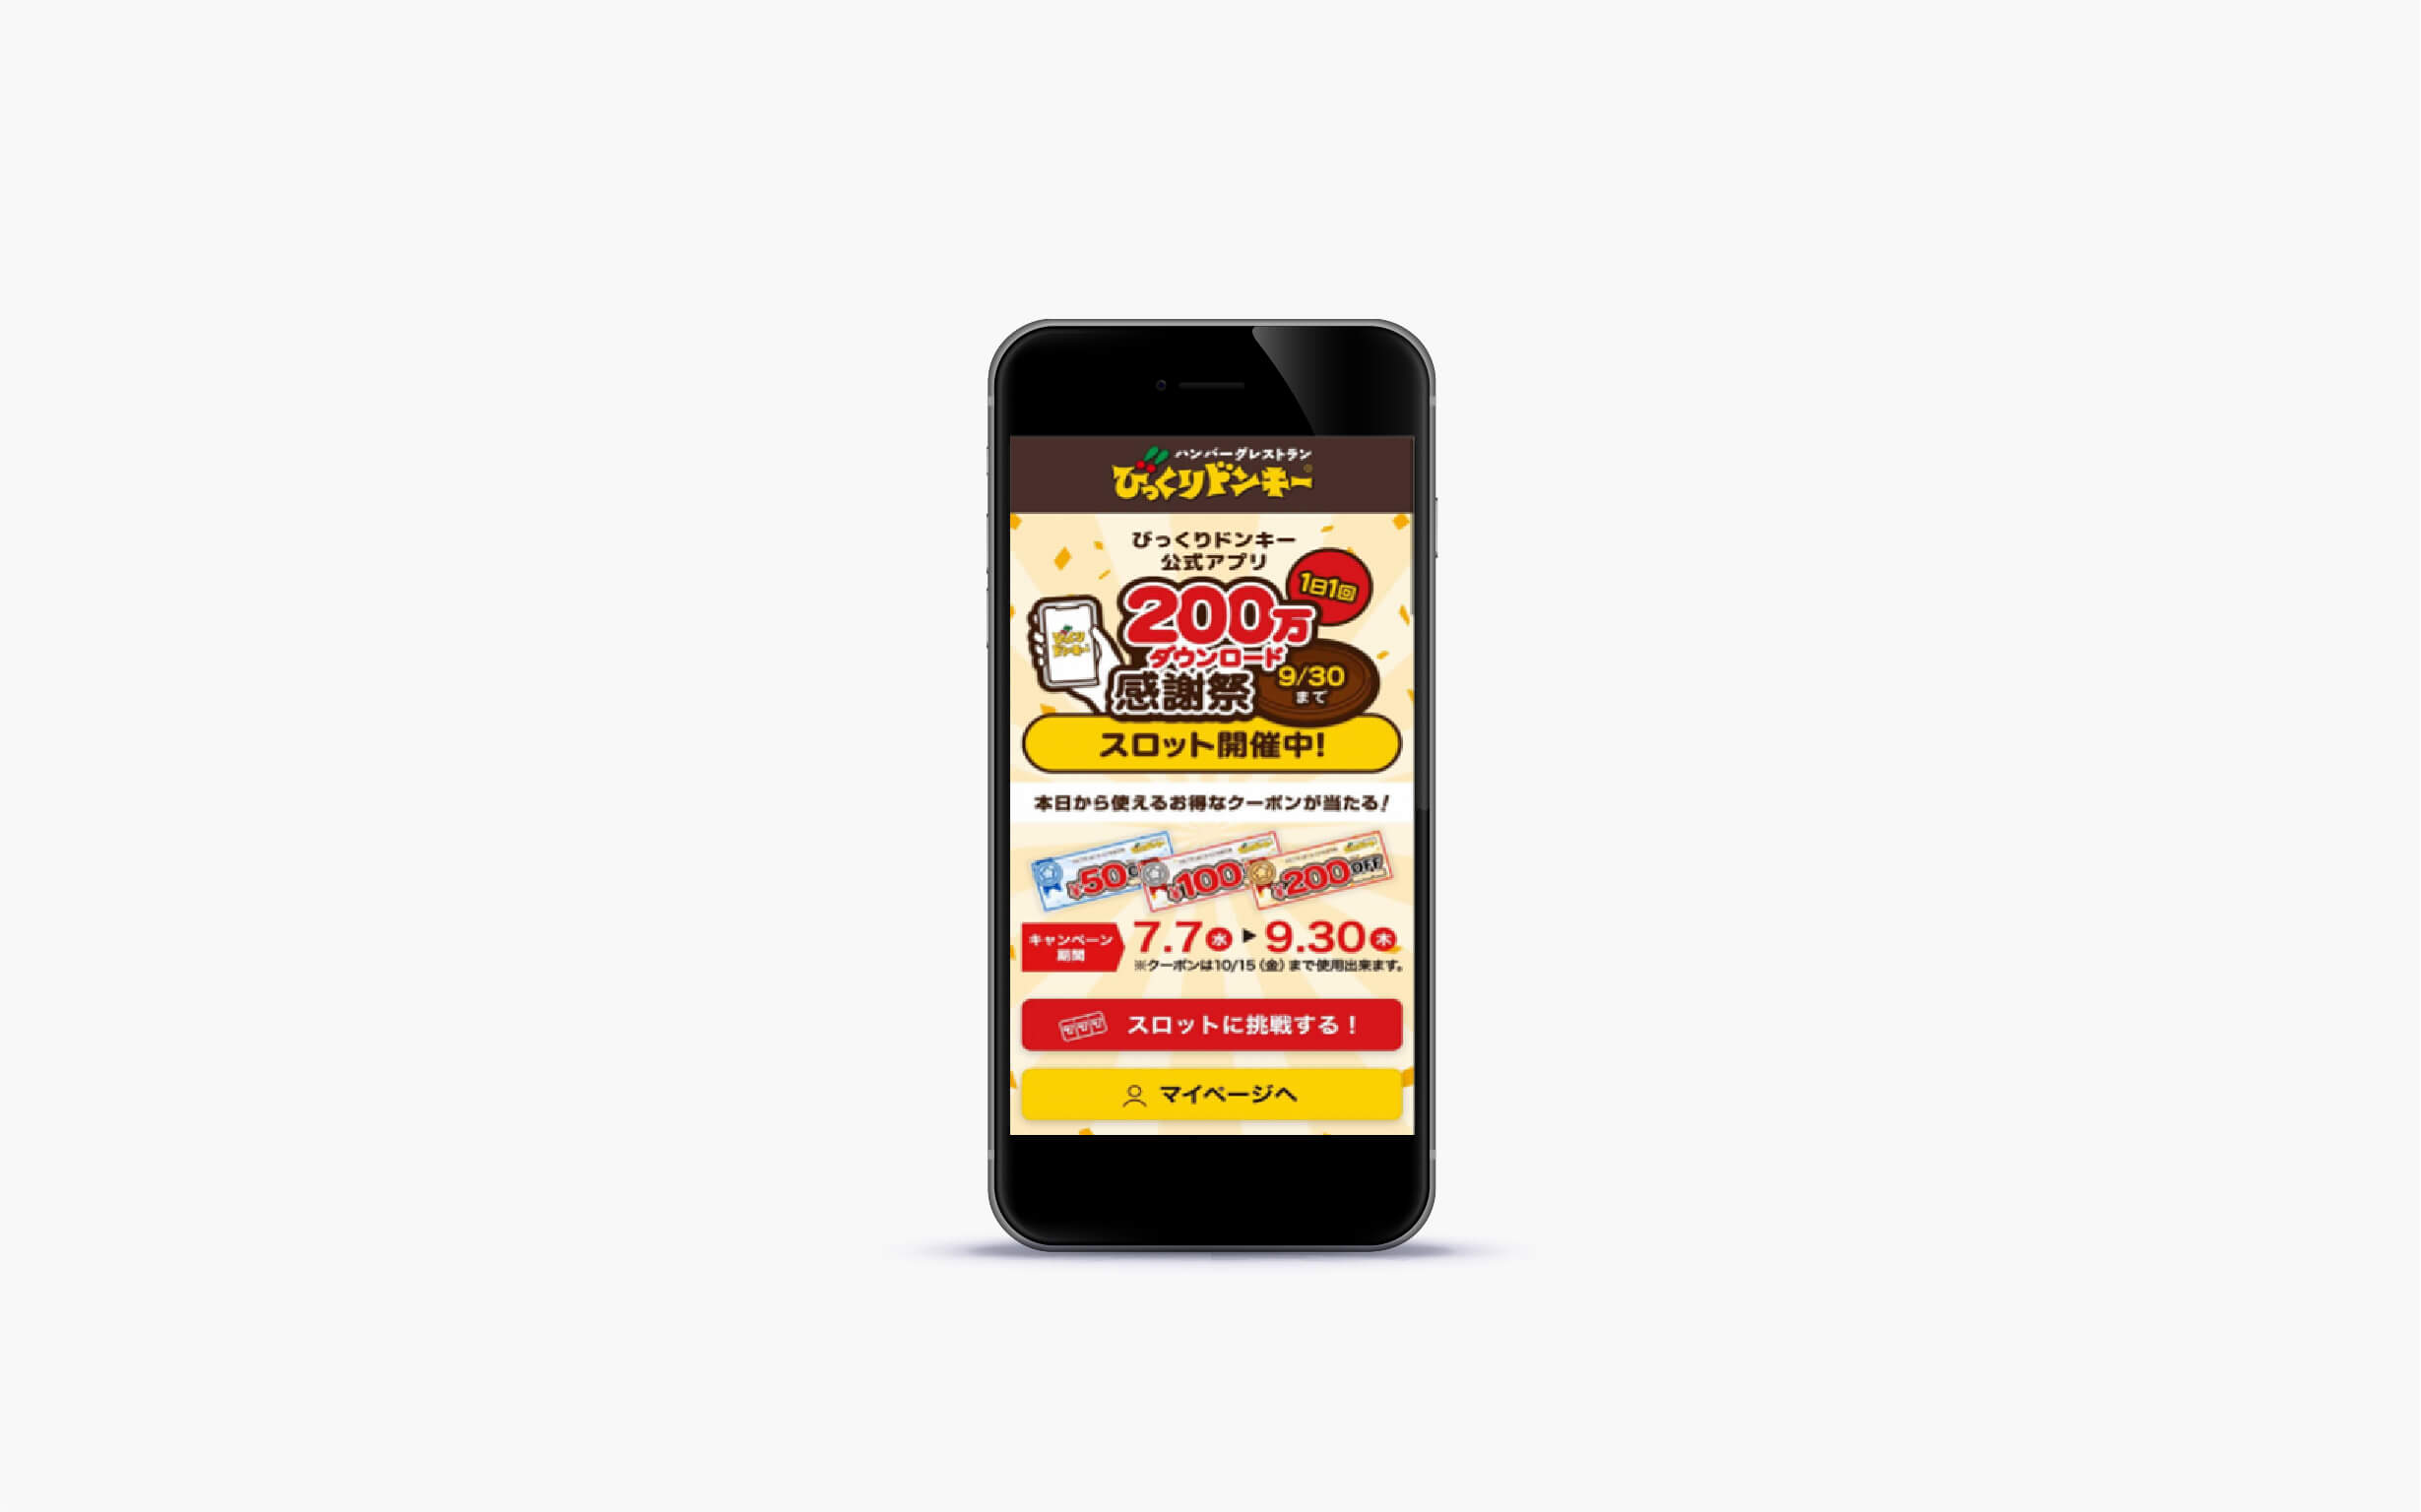 びっくりドンキー公式アプリ 200万ダウンロード感謝祭スロットキャンペーン